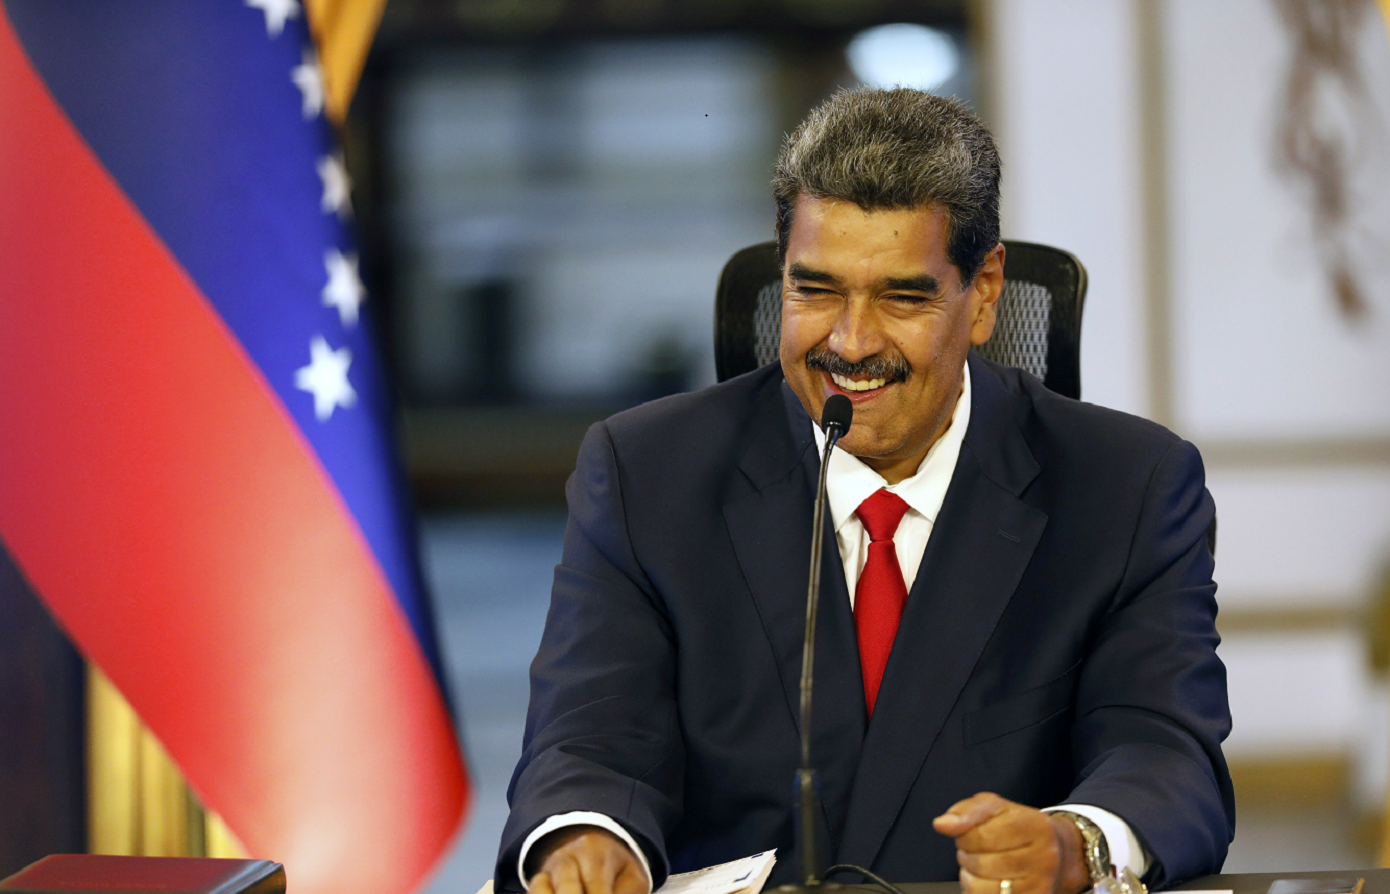 Οι ΗΠΑ αναγνώρισαν τον Ουρούτια ως νικητή των εκλογών στη Βενεζουέλα και όχι τον Μαδούρο